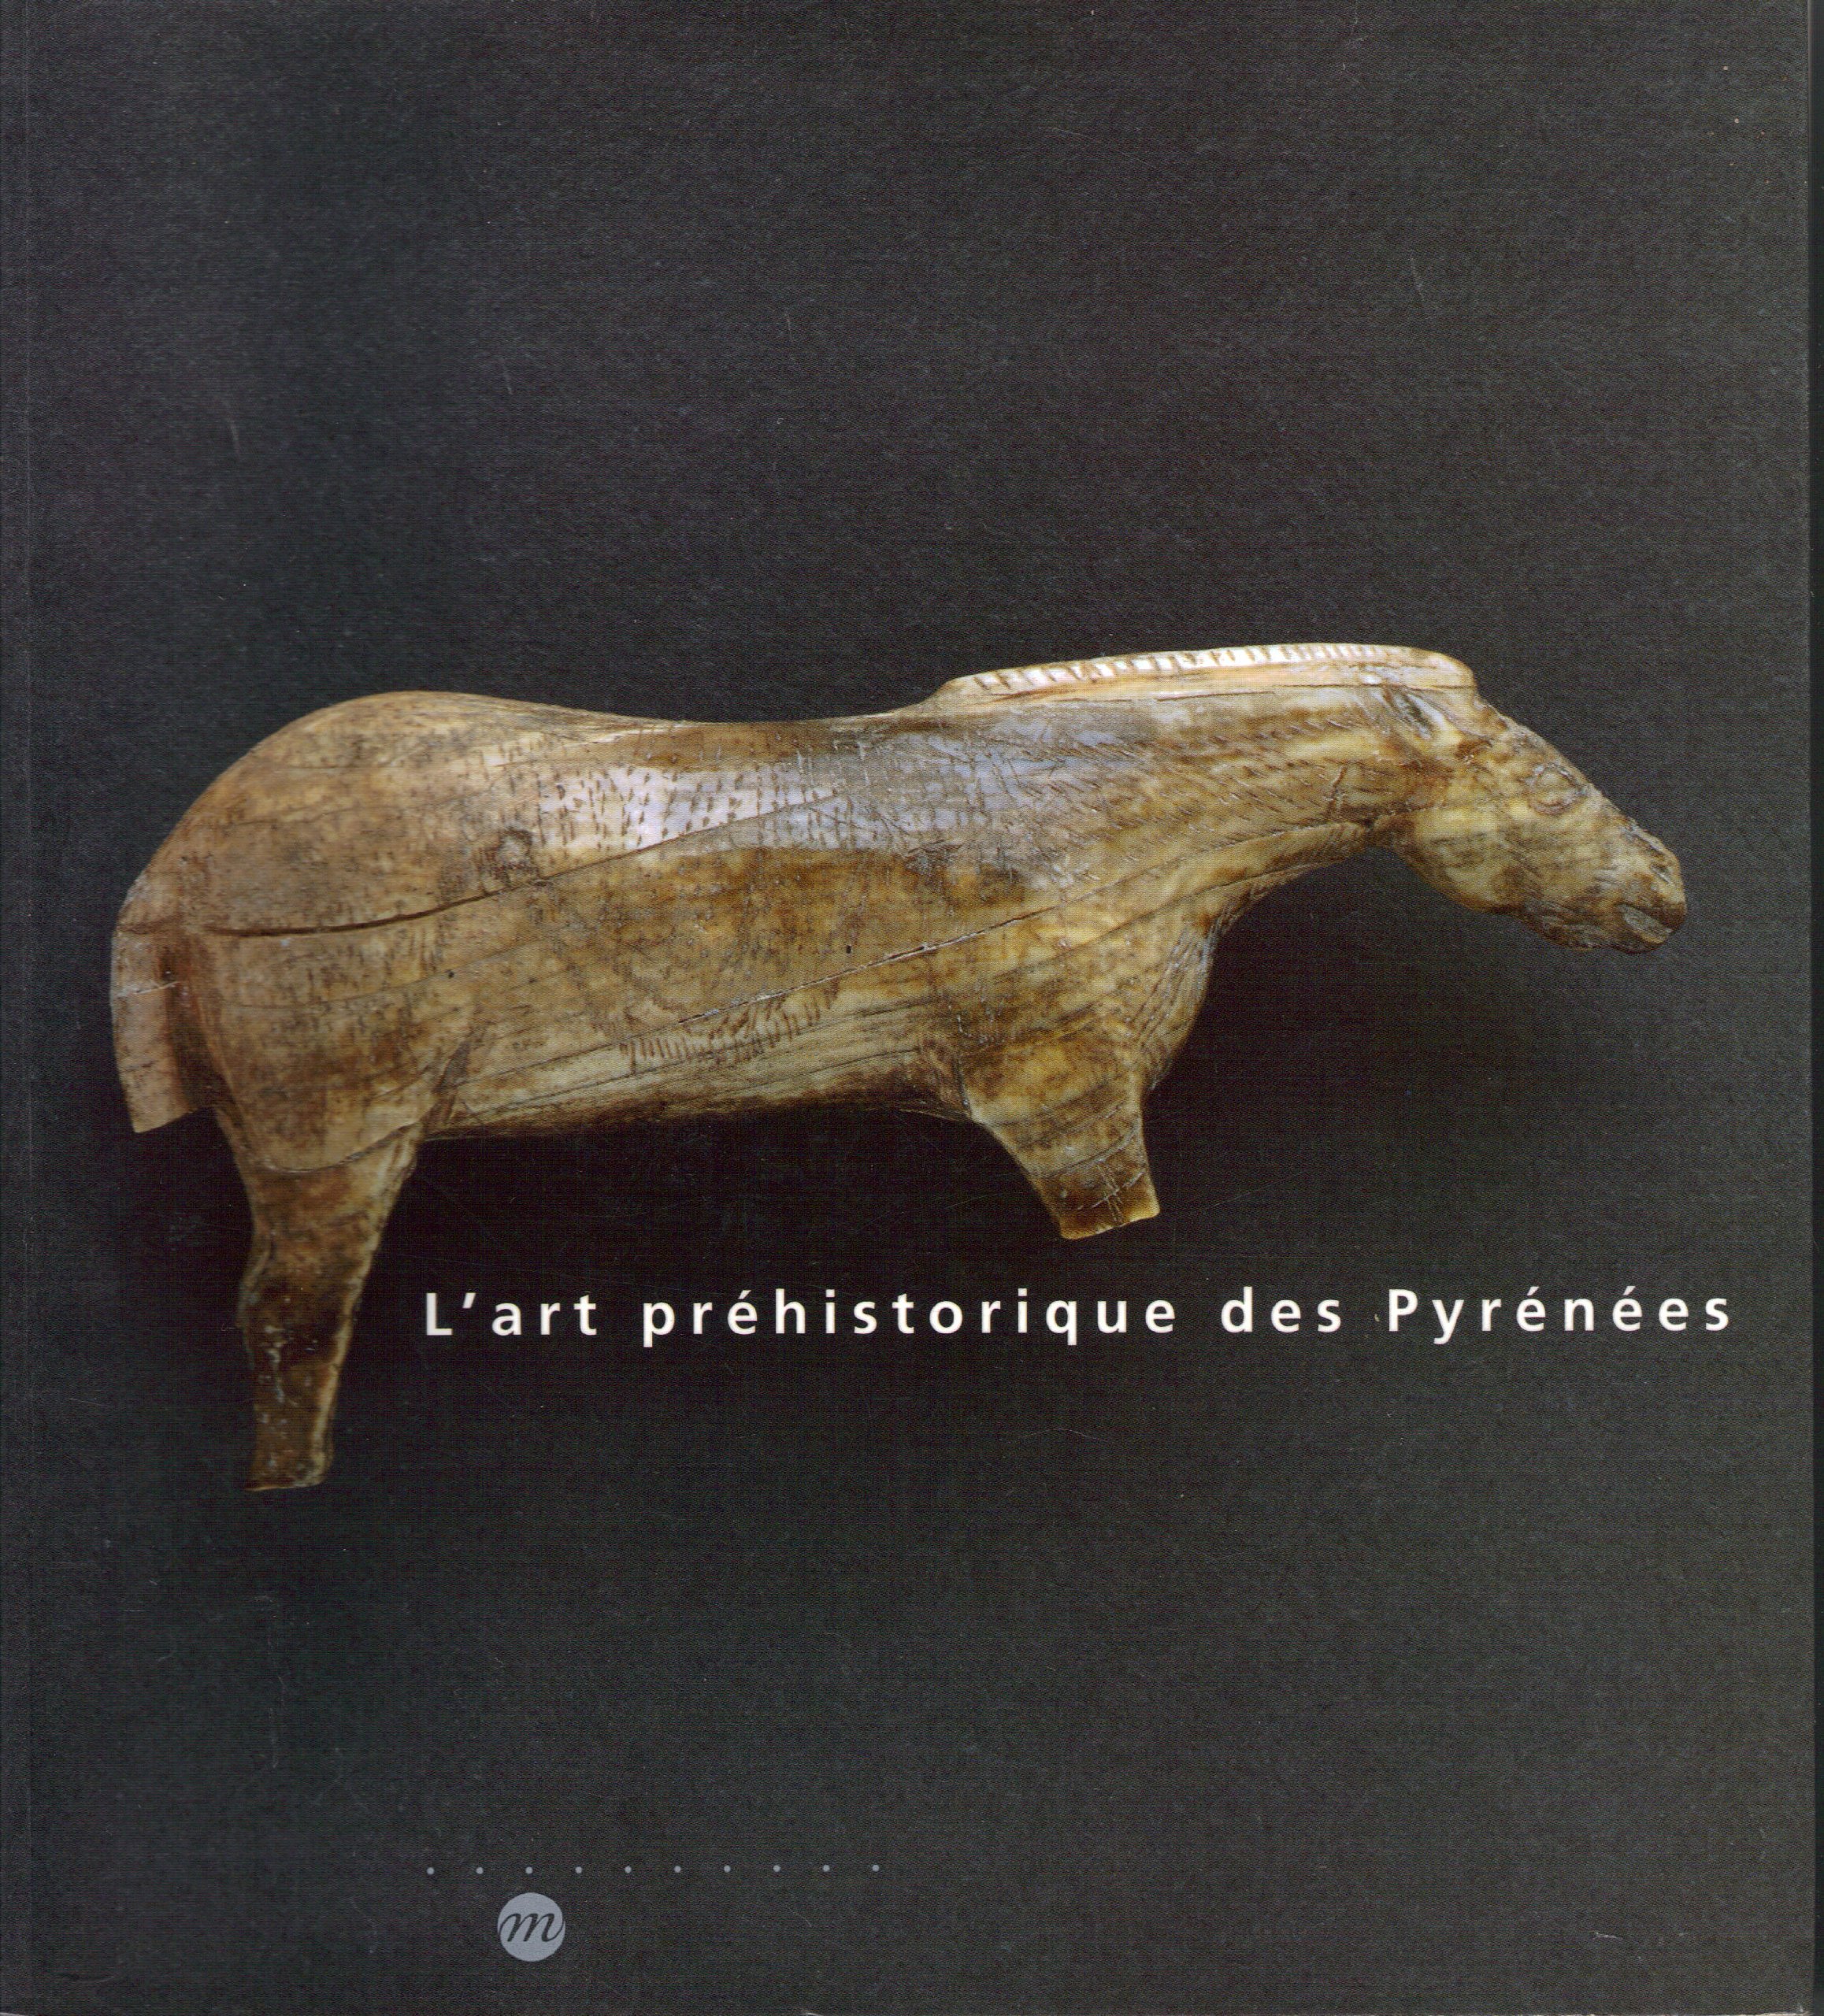 Art préhistorique des Pyrénées